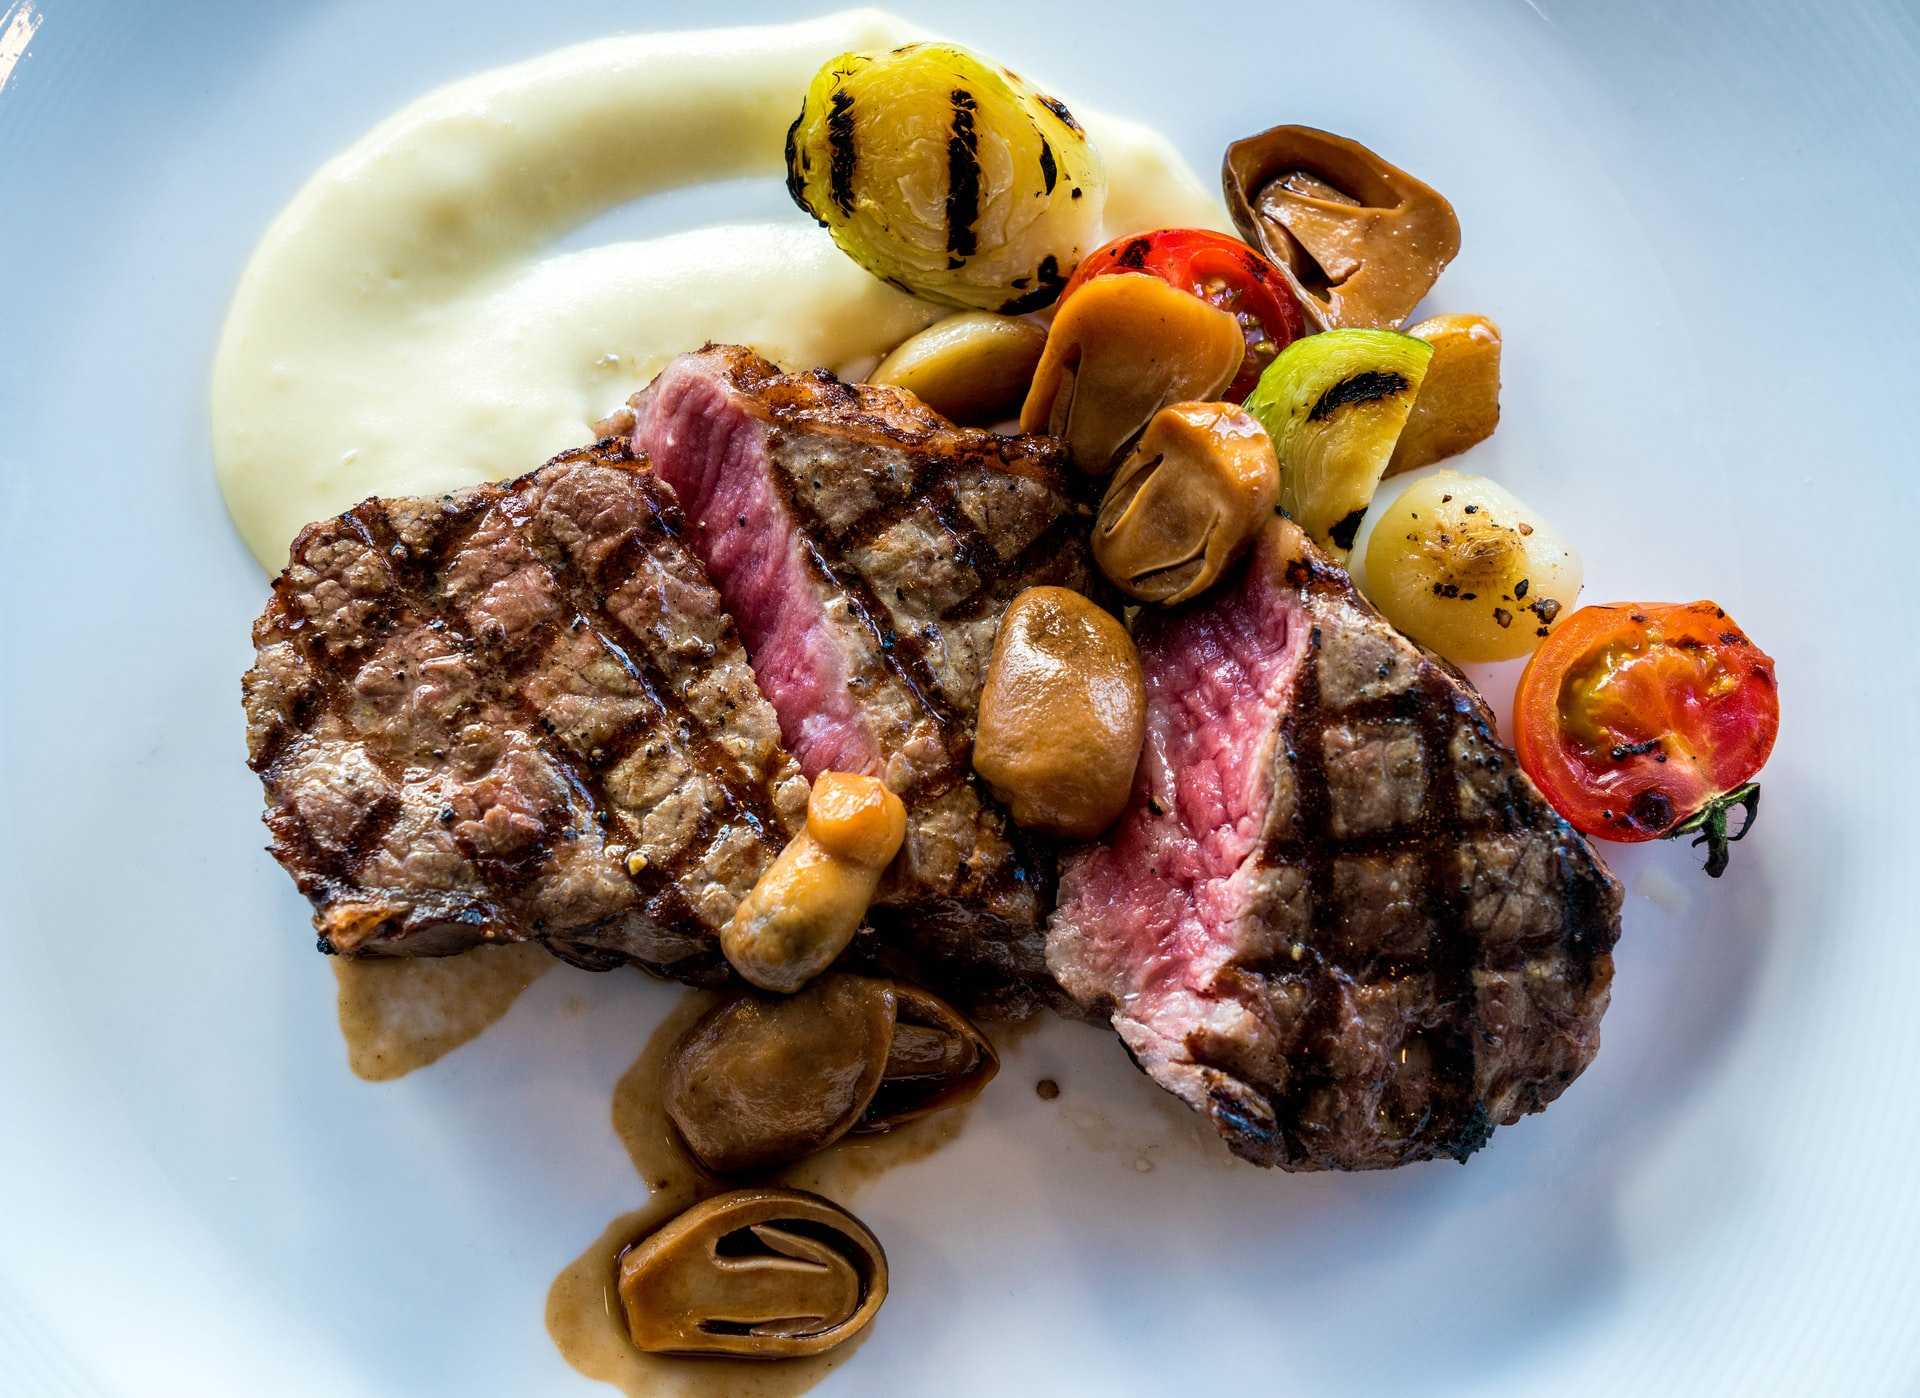 In 80 Steaks around the world